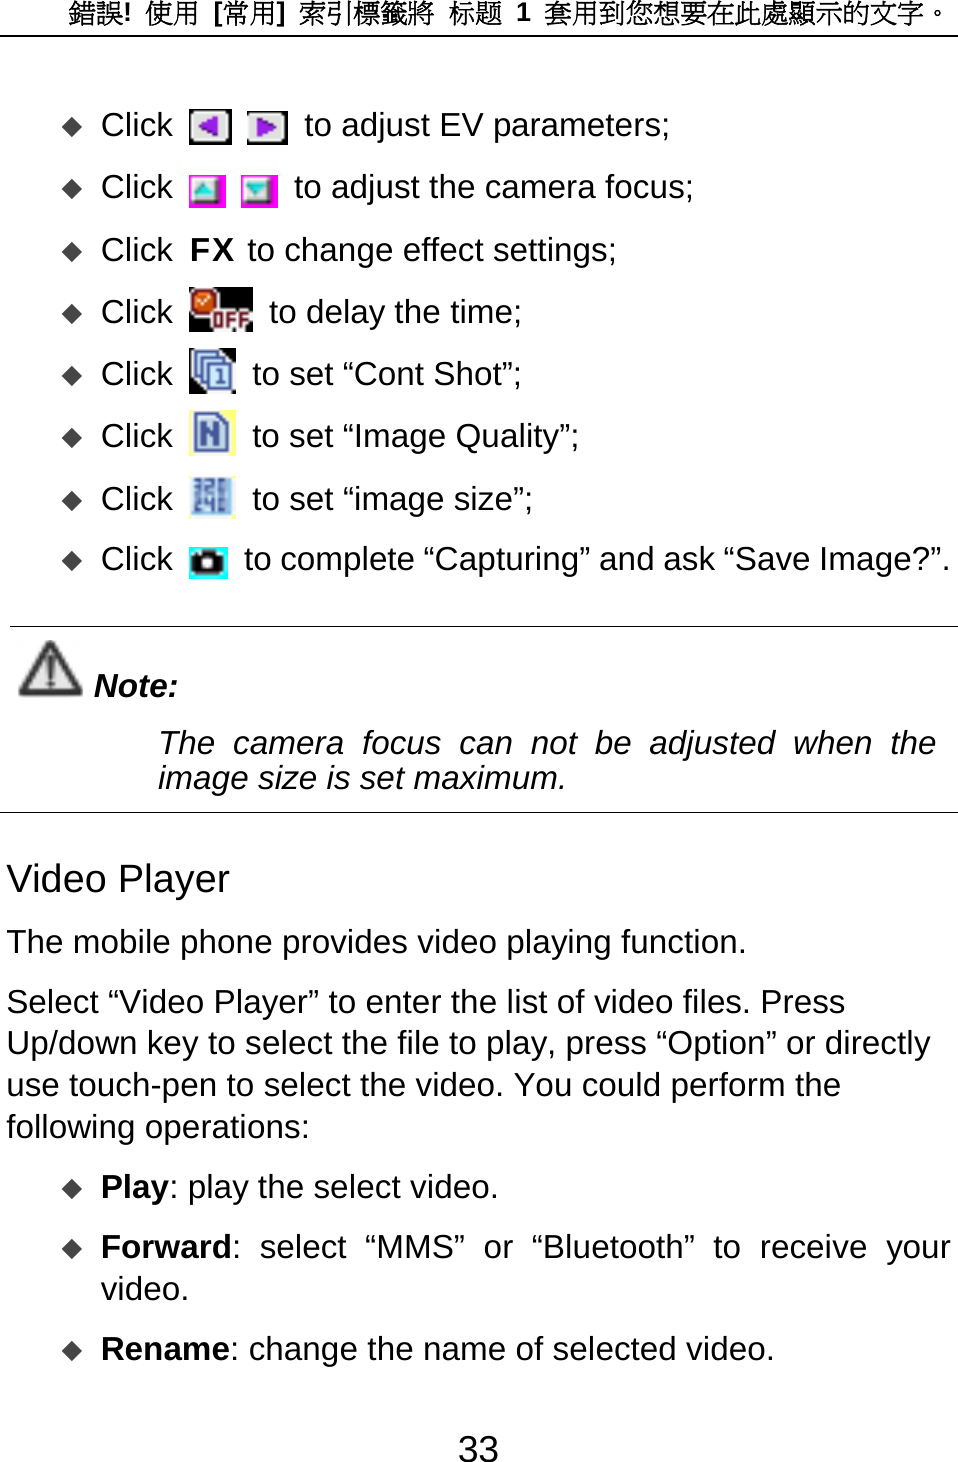 錯誤!  使用 [常用]  索引標籤將 标题 1 套用到您想要在此處顯示的文字。 33  Click    to adjust EV parameters;  Click    to adjust the camera focus;  Click FX to change effect settings;  Click   to delay the time;  Click   to set “Cont Shot”;  Click   to set “Image Quality”;  Click   to set “image size”;  Click   to complete “Capturing” and ask “Save Image?”.  Note: The camera focus can not be adjusted when the image size is set maximum.  Video Player The mobile phone provides video playing function.   Select “Video Player” to enter the list of video files. Press Up/down key to select the file to play, press “Option” or directly use touch-pen to select the video. You could perform the following operations:    Play: play the select video.    Forward: select “MMS” or “Bluetooth” to receive your video.   Rename: change the name of selected video. 